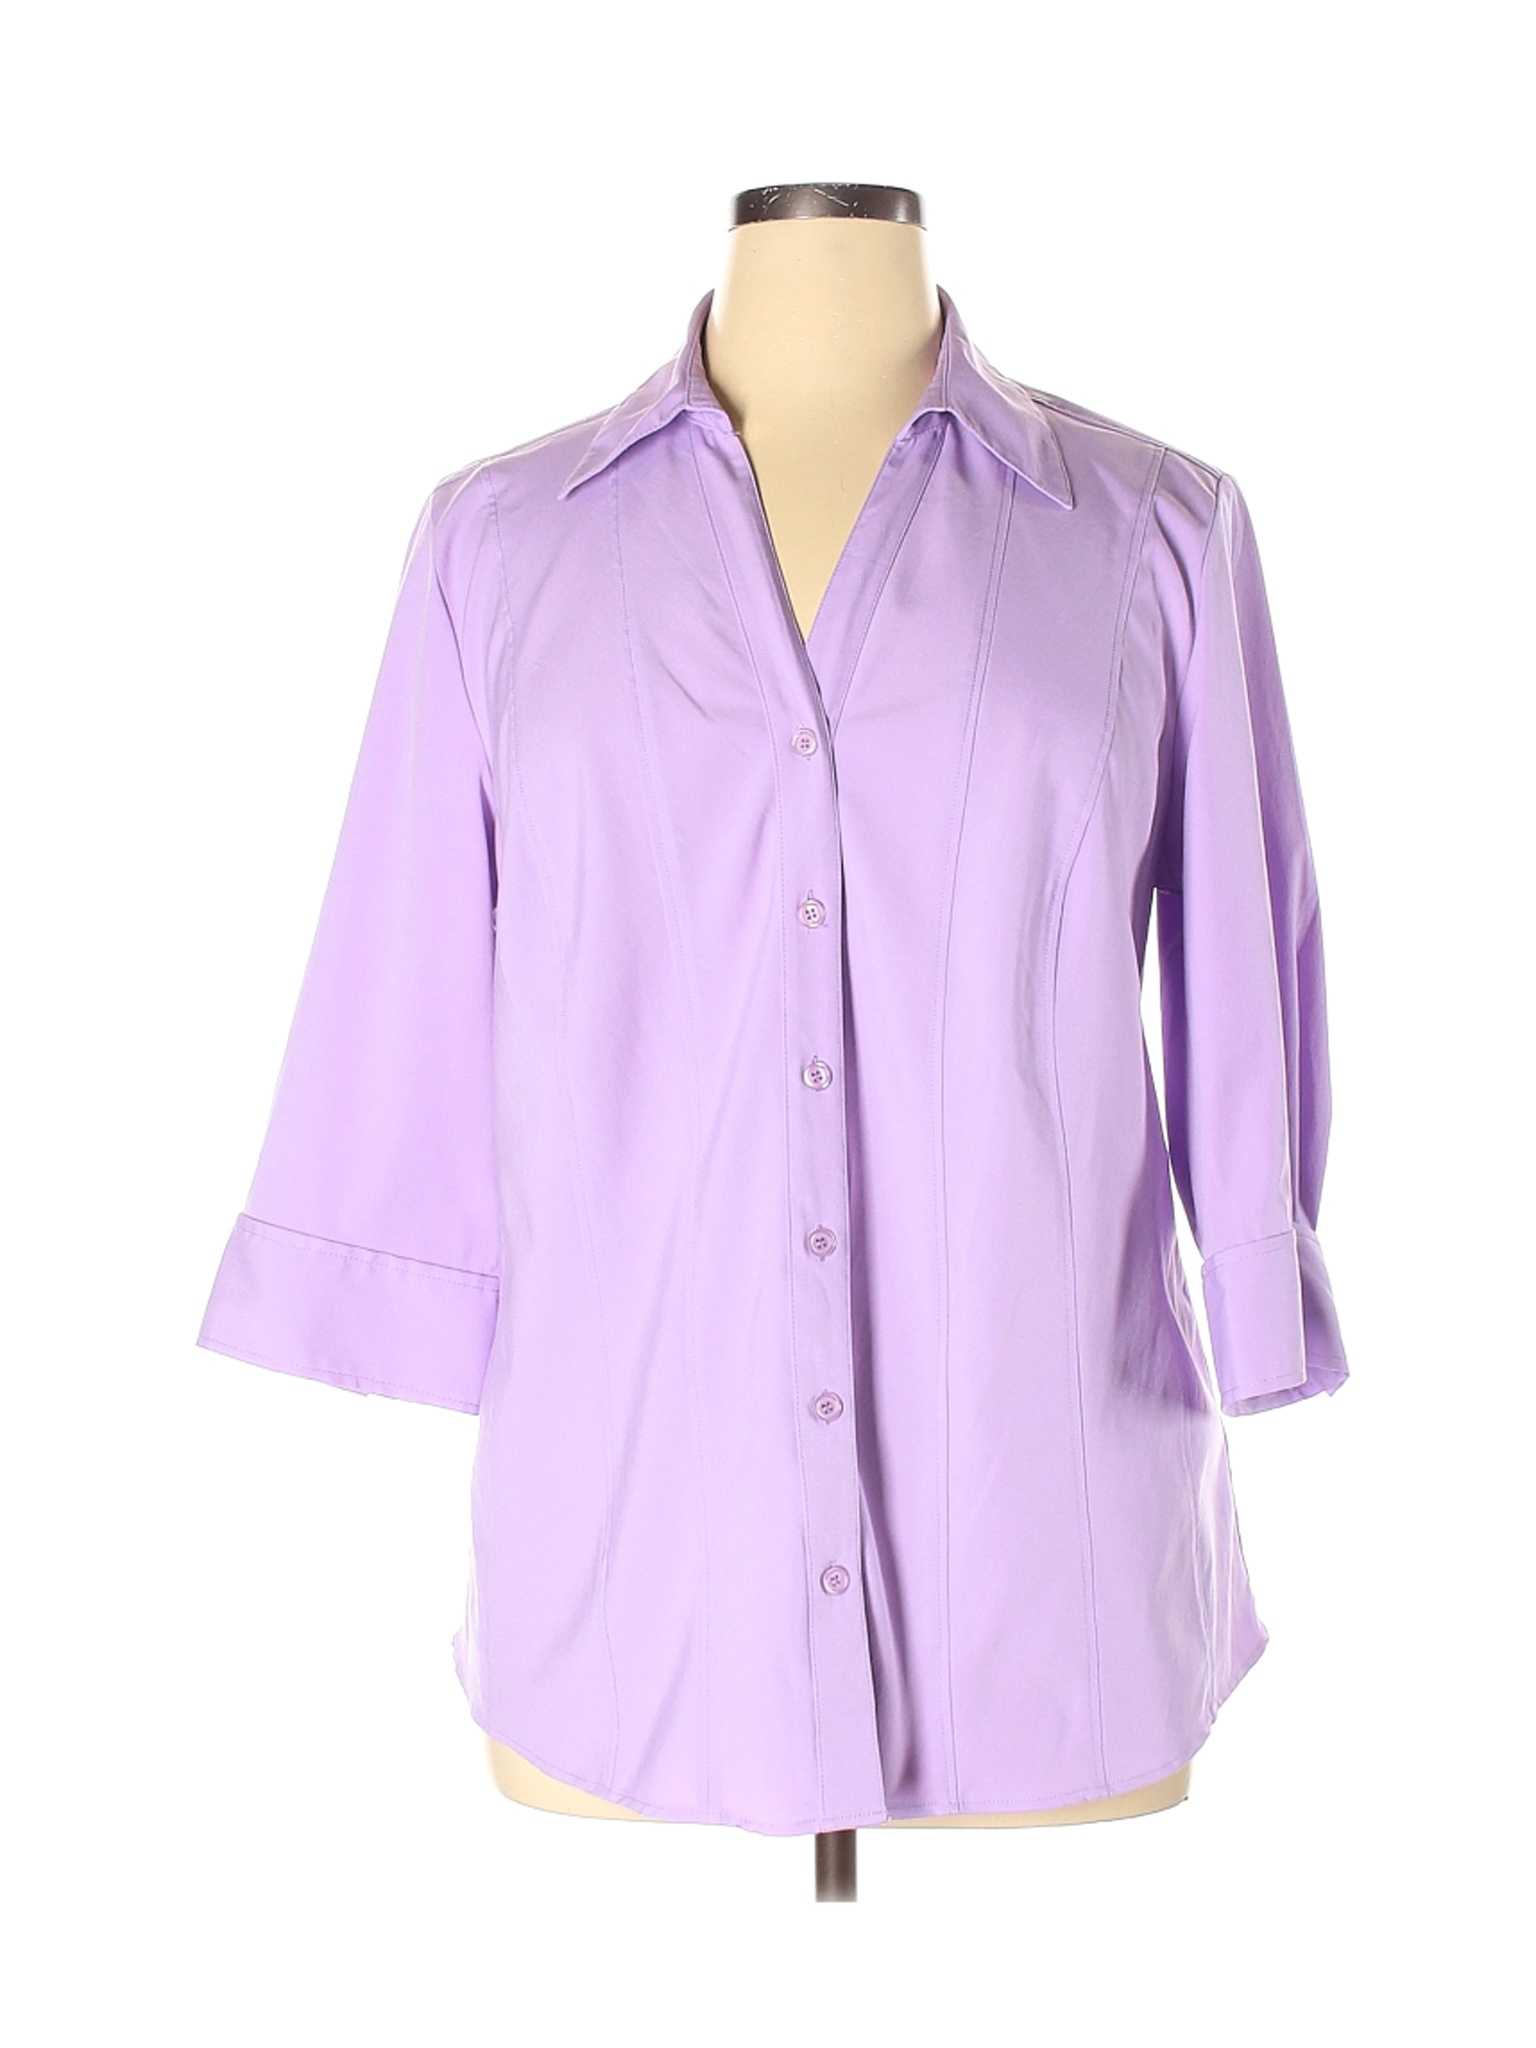 Style&Co Women Purple 3/4 Sleeve Blouse 16 | eBay